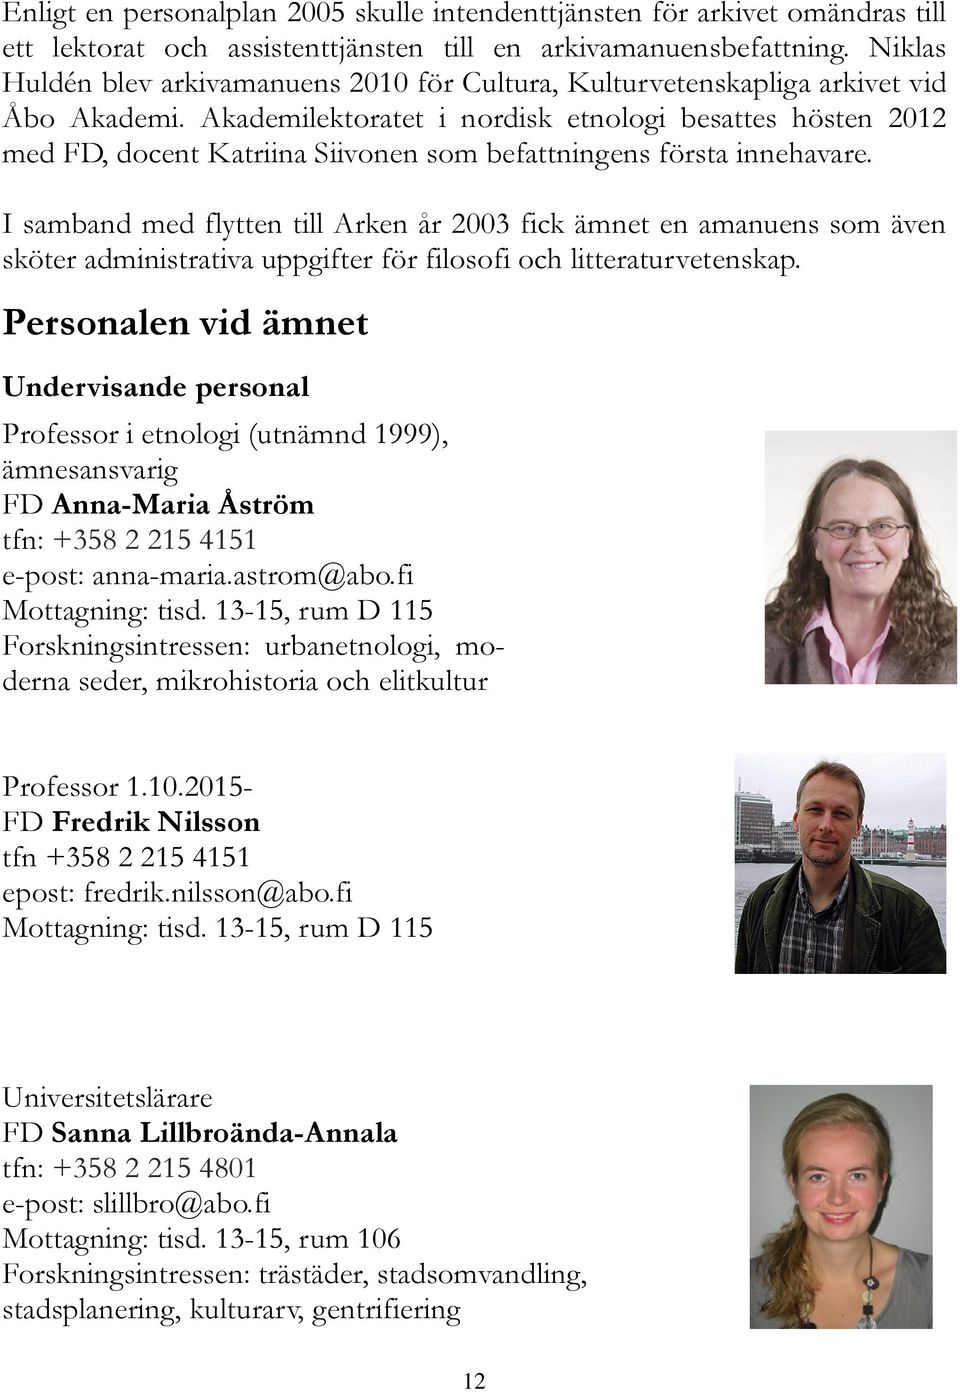 Akademilektoratet i nordisk etnologi besattes hösten 2012 med FD, docent Katriina Siivonen som befattningens första innehavare.